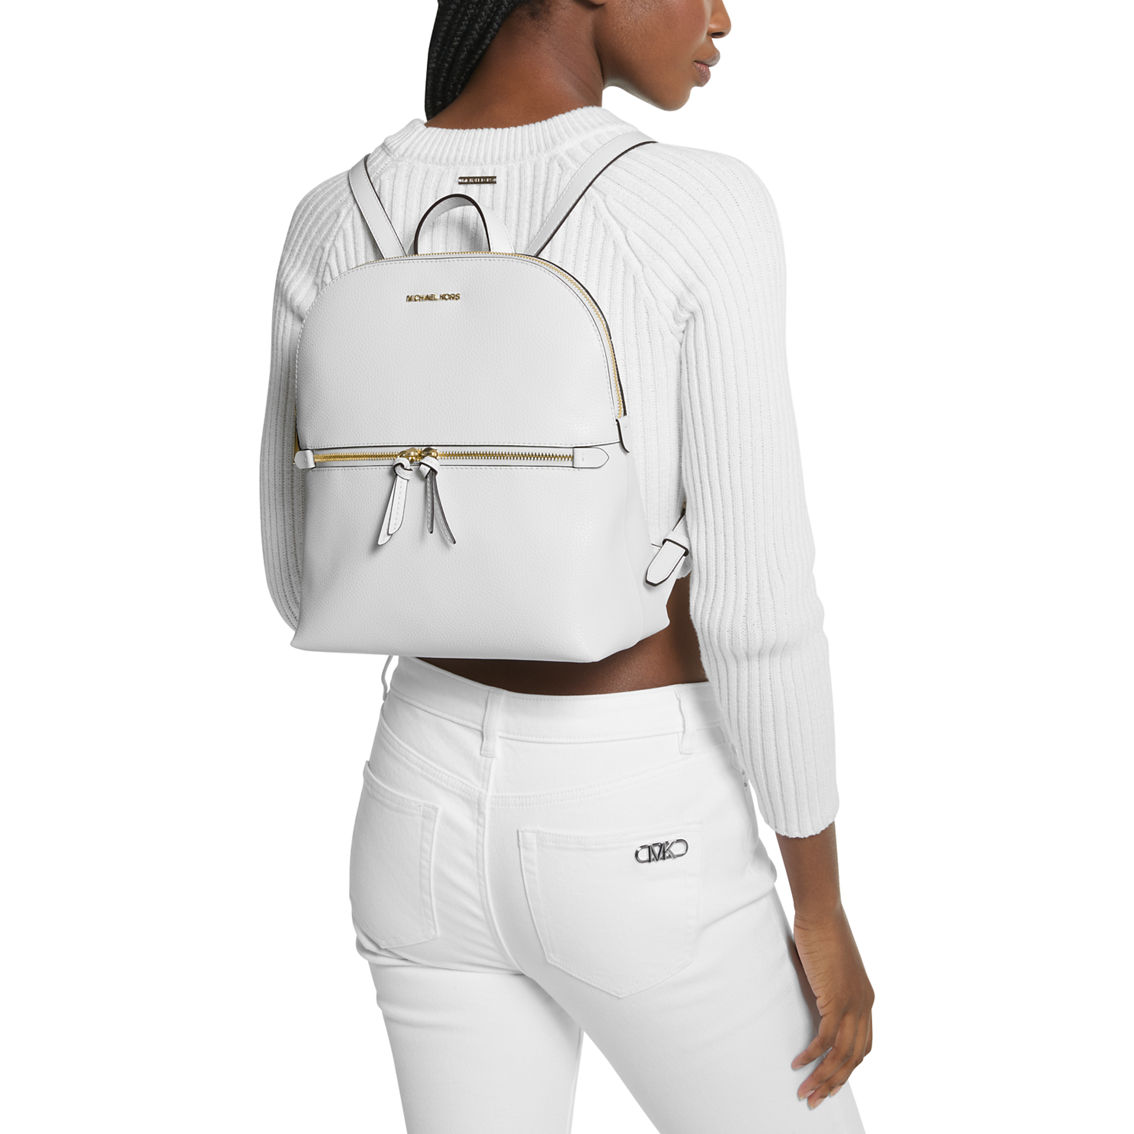 Michael Kors Dallas Medium Slim Backpack - Image 4 of 4